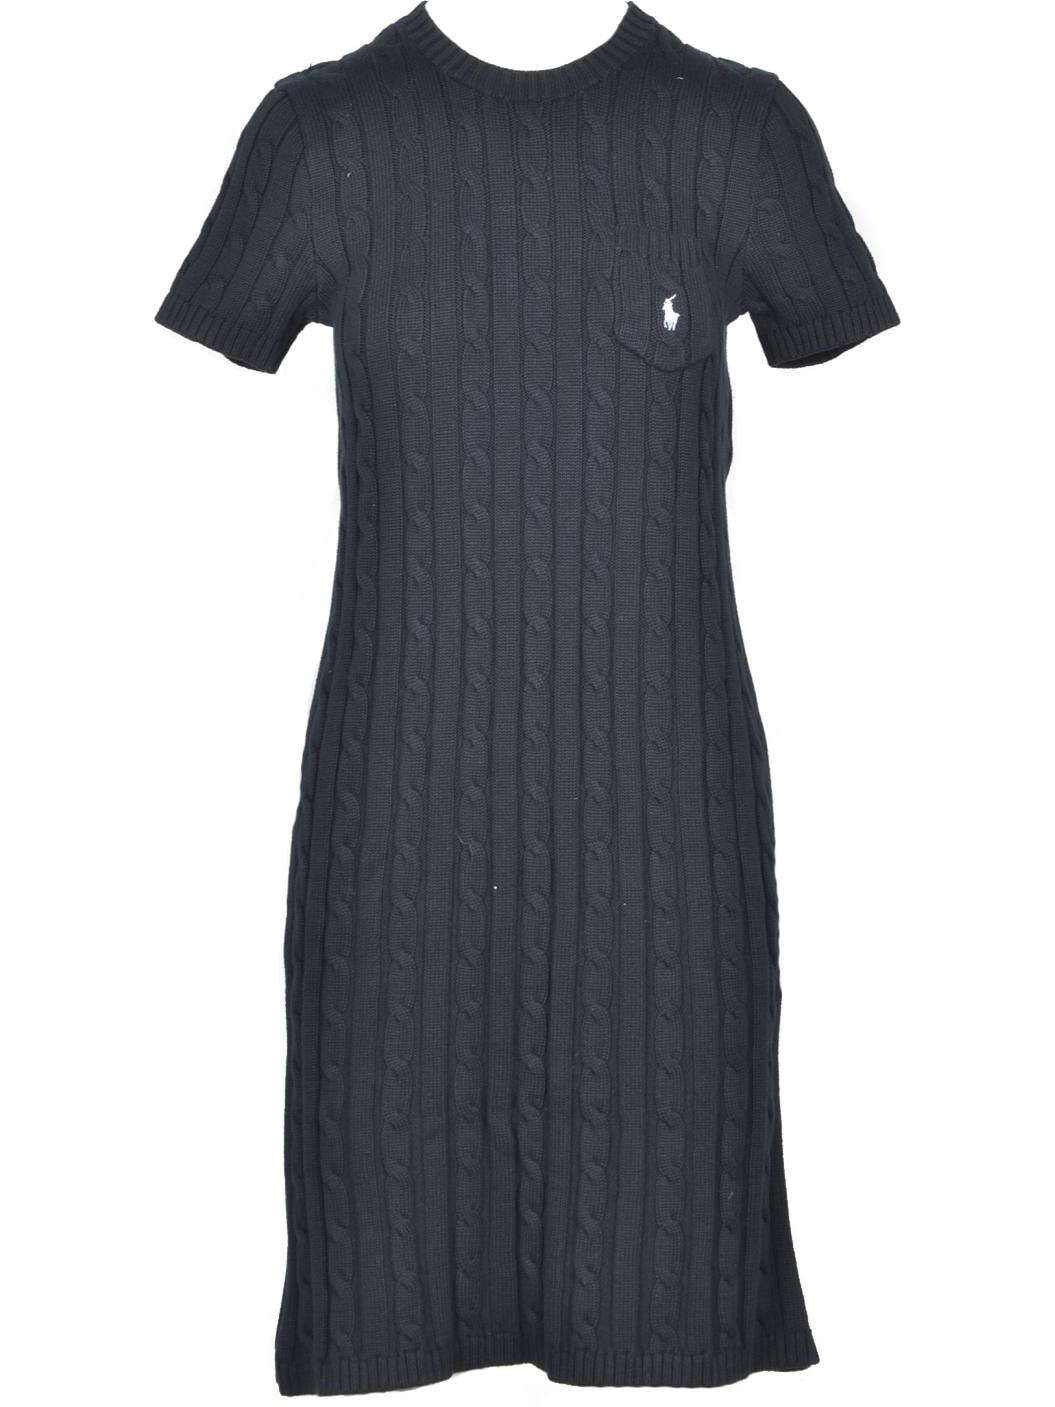 Ralph Lauren Black Cable-Knit Cotton Women's Dress M at FORZIERI